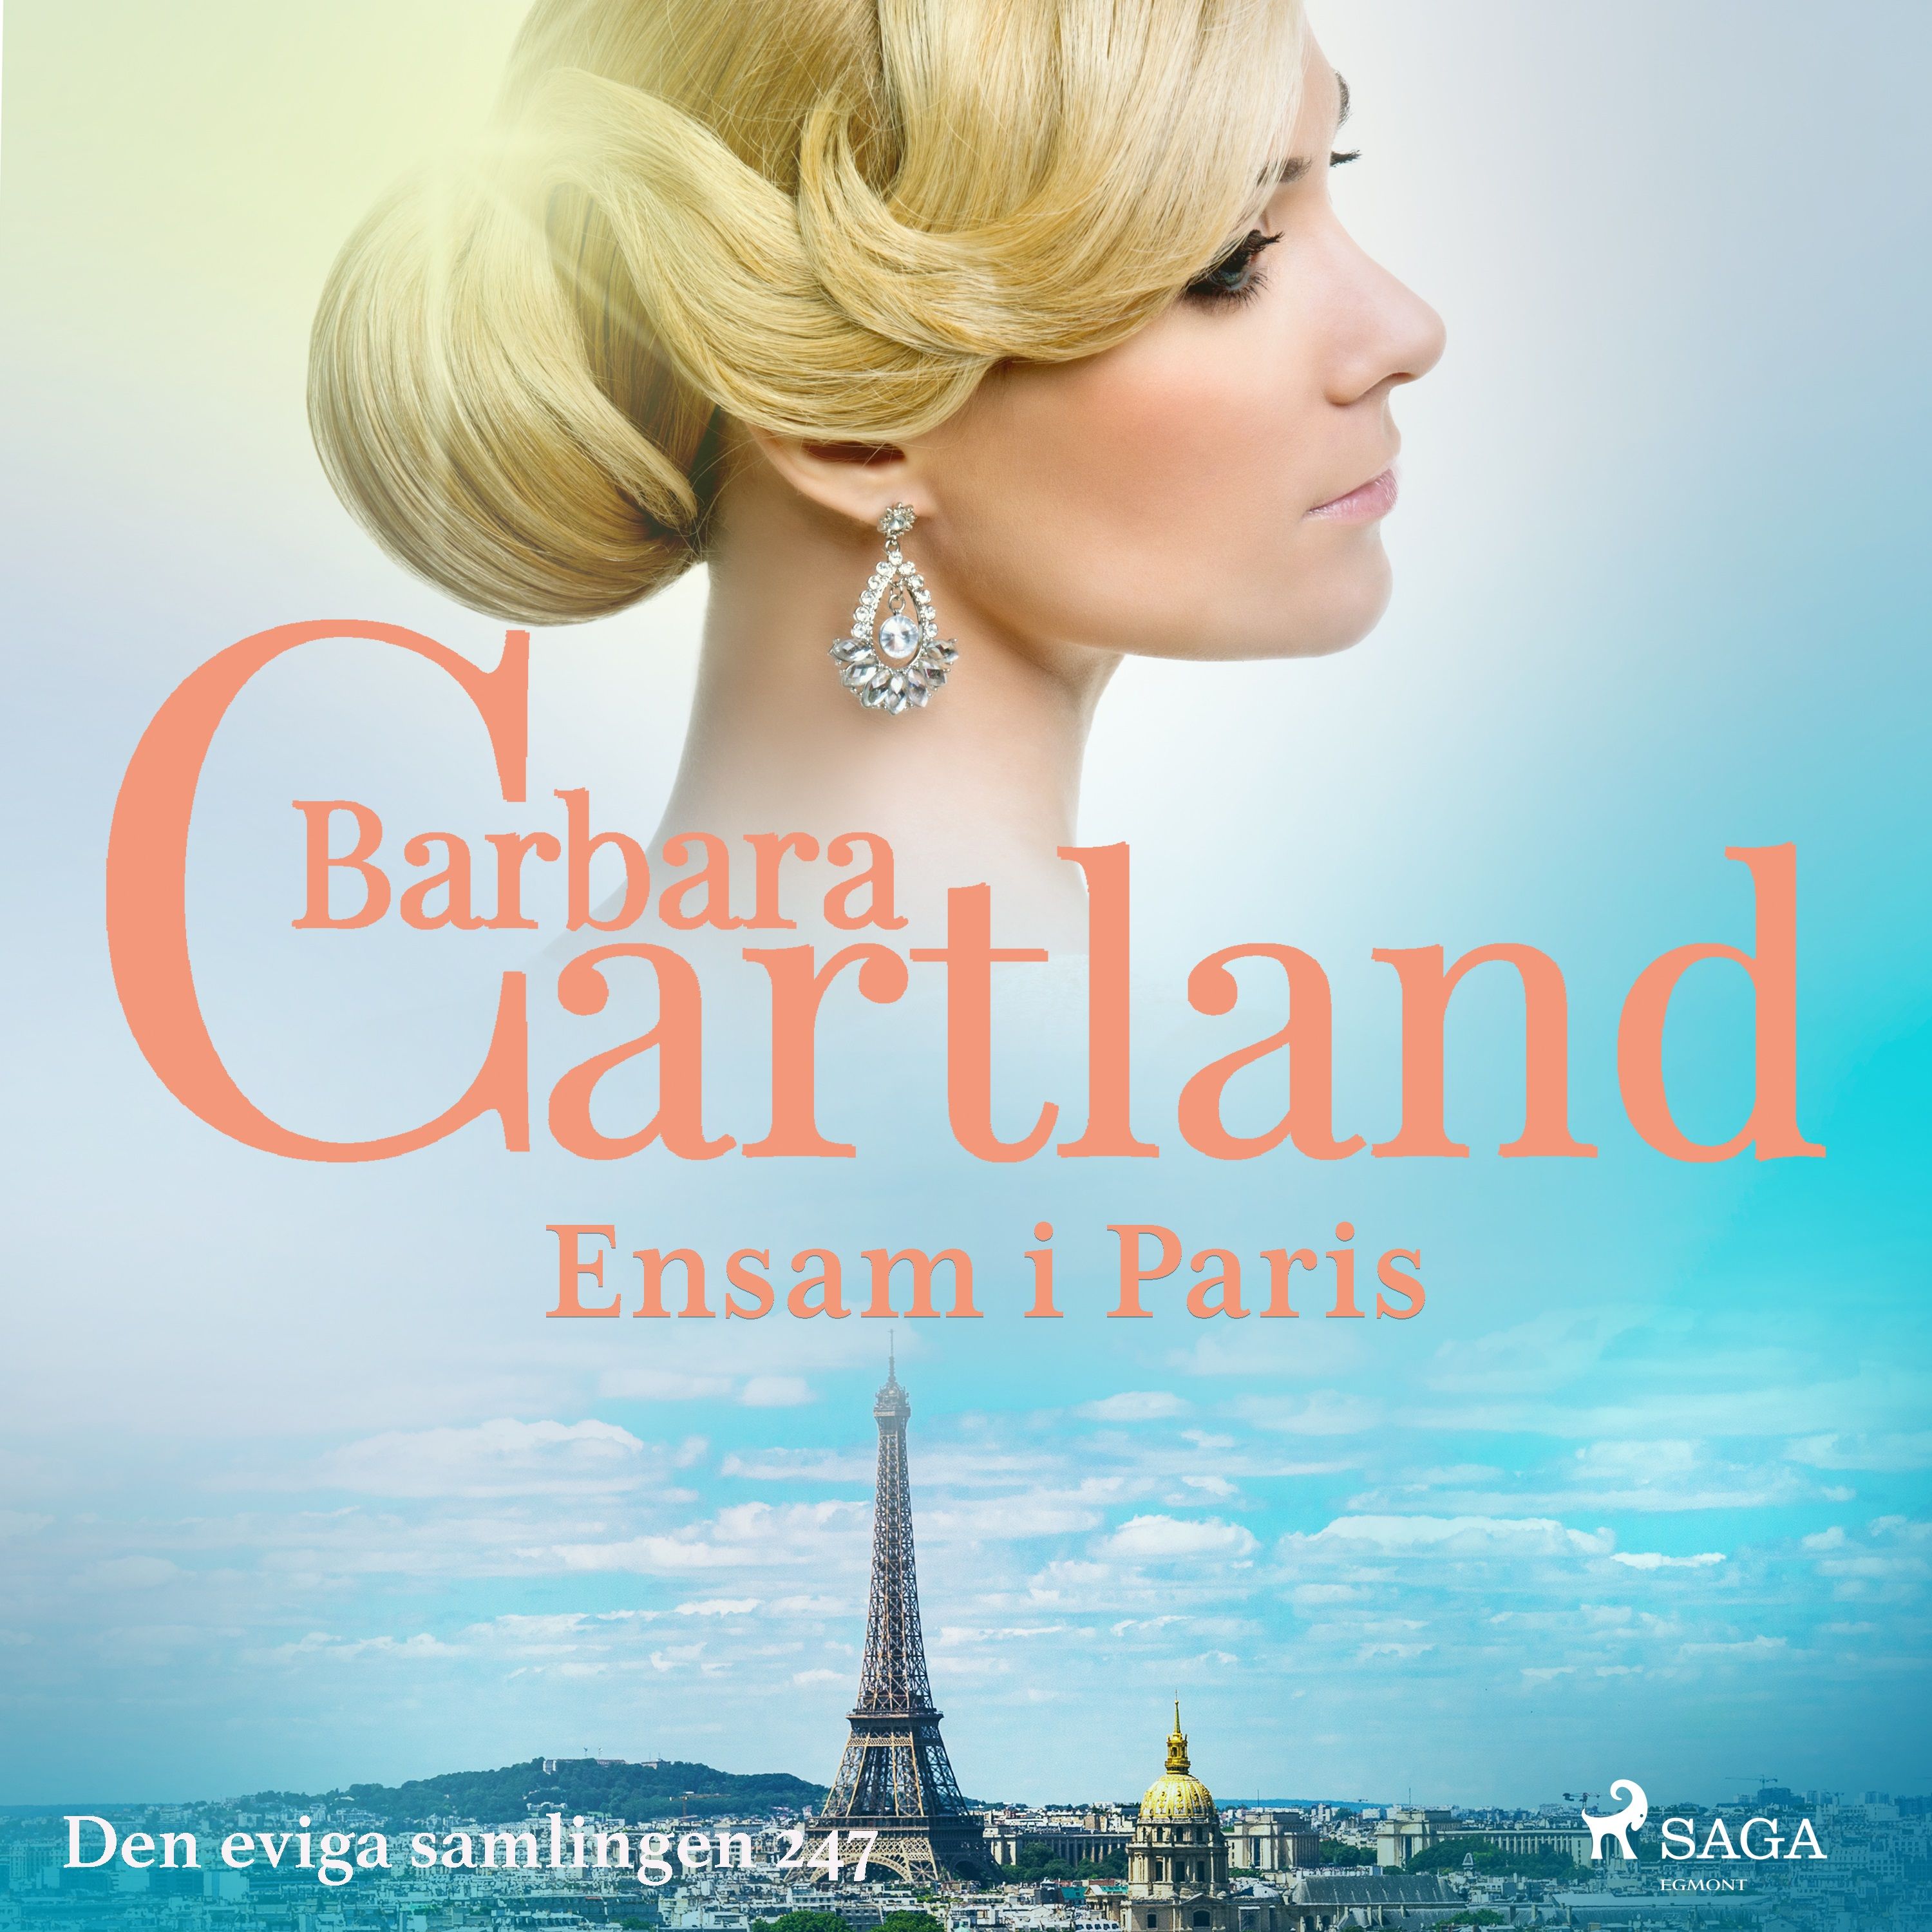 Ensam i Paris, ljudbok av Barbara Cartland